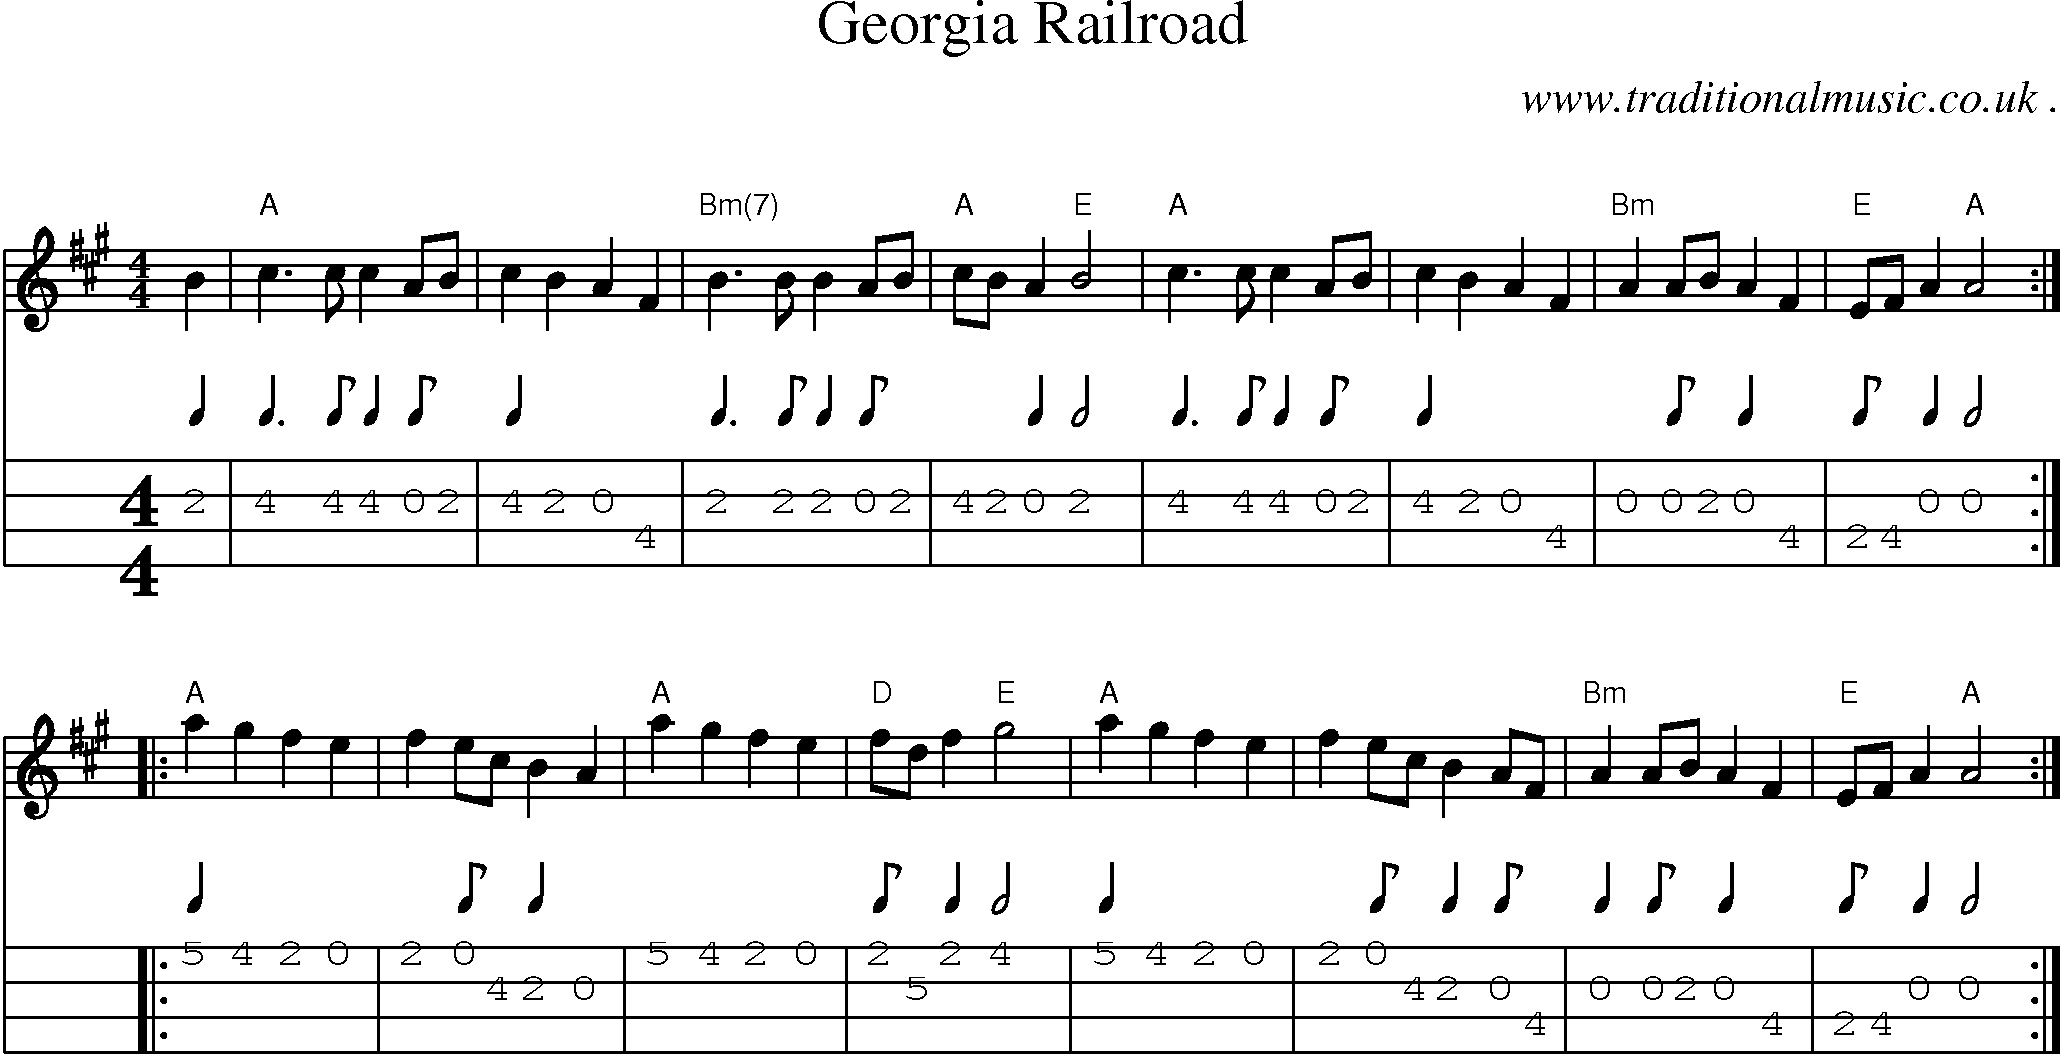 Music Score and Mandolin Tabs for Georgia Railroad